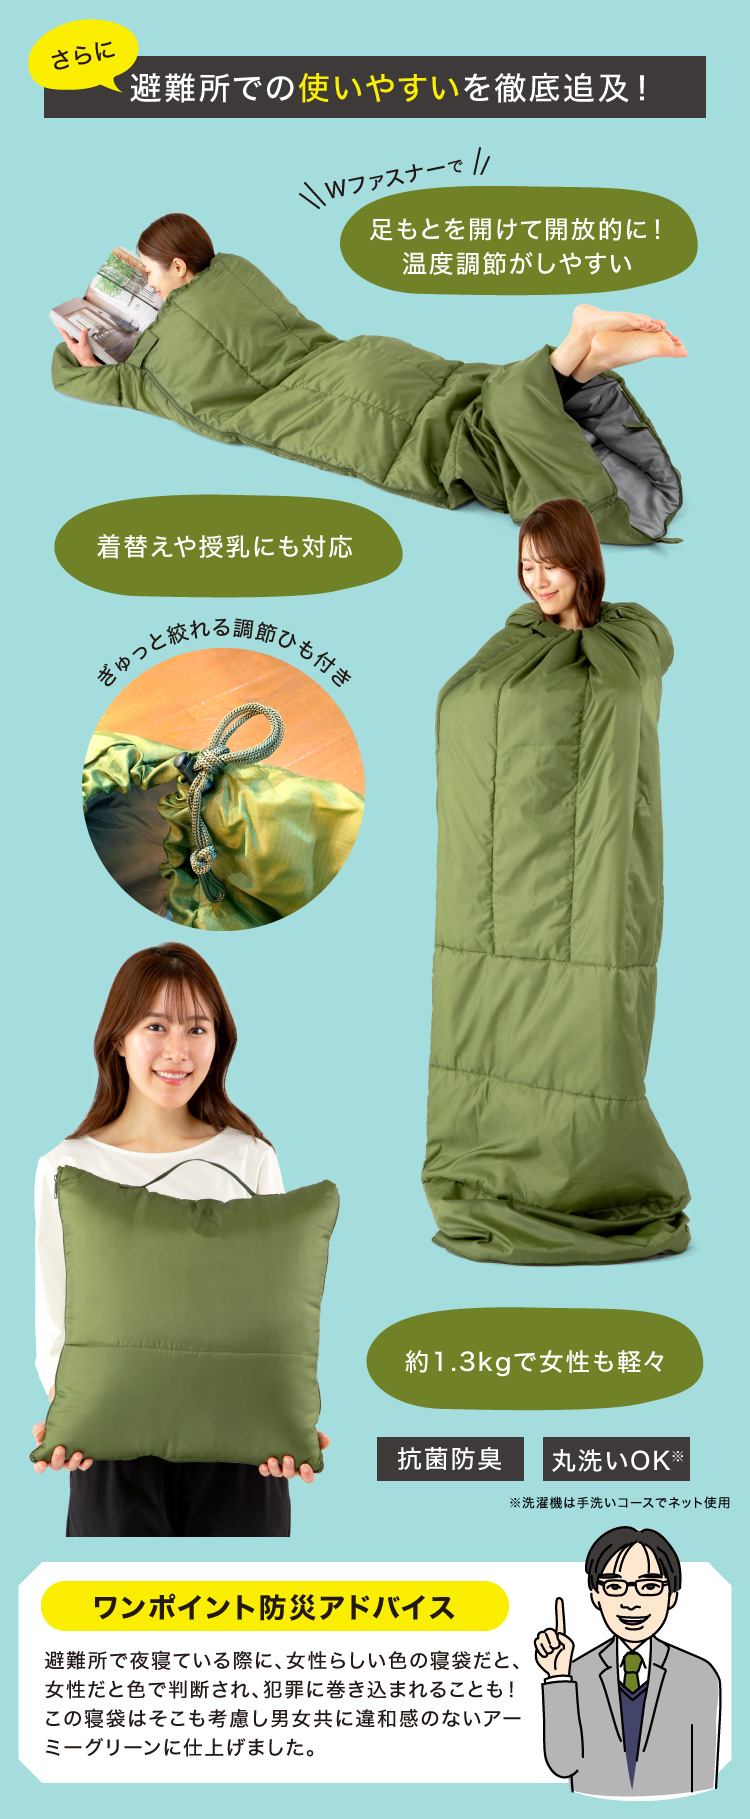 SONAENO クッション型多機能寝袋 ソナエノ | プロイデア | ドリーム公式オンラインストア